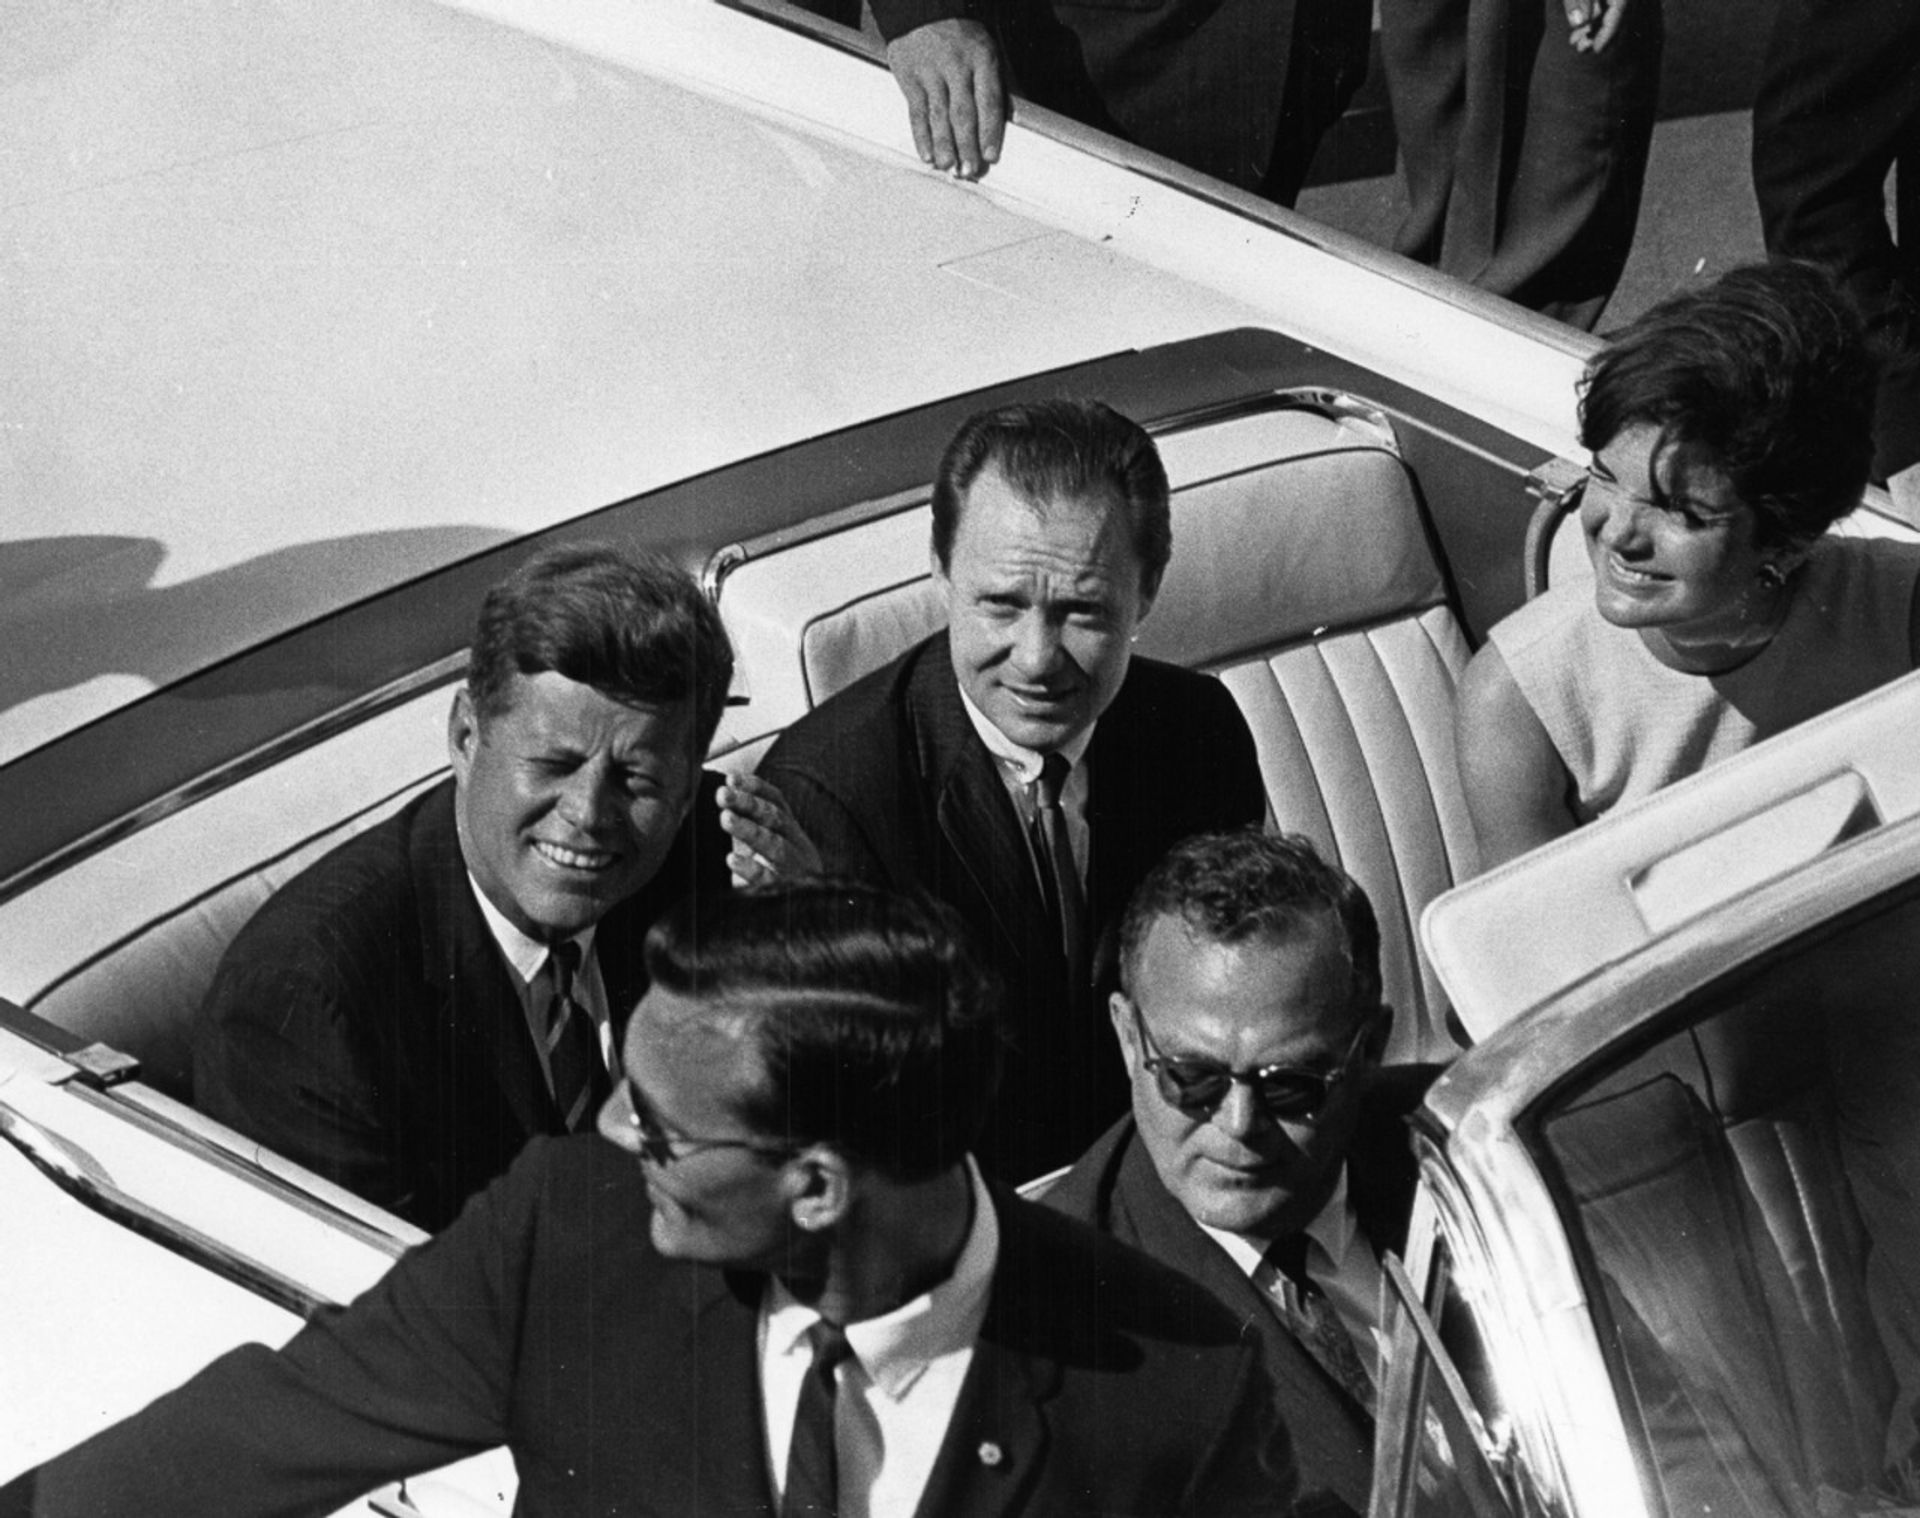 John F. Kennedy "with Jackie Kennedy" Photo Print